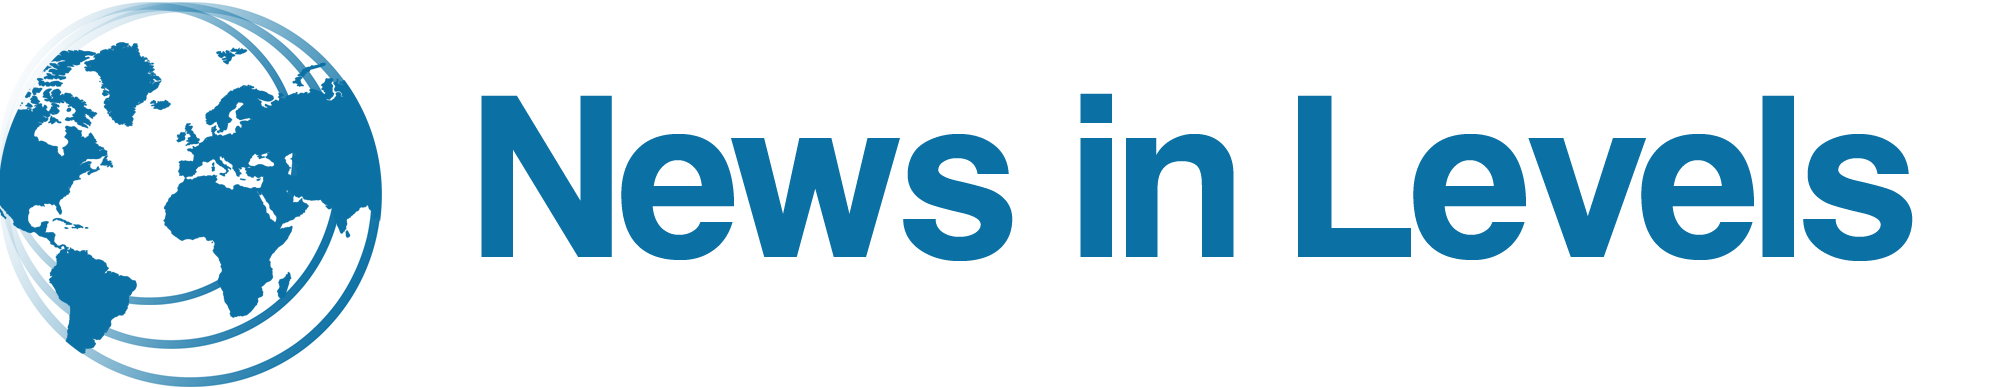 Newsinlevels com